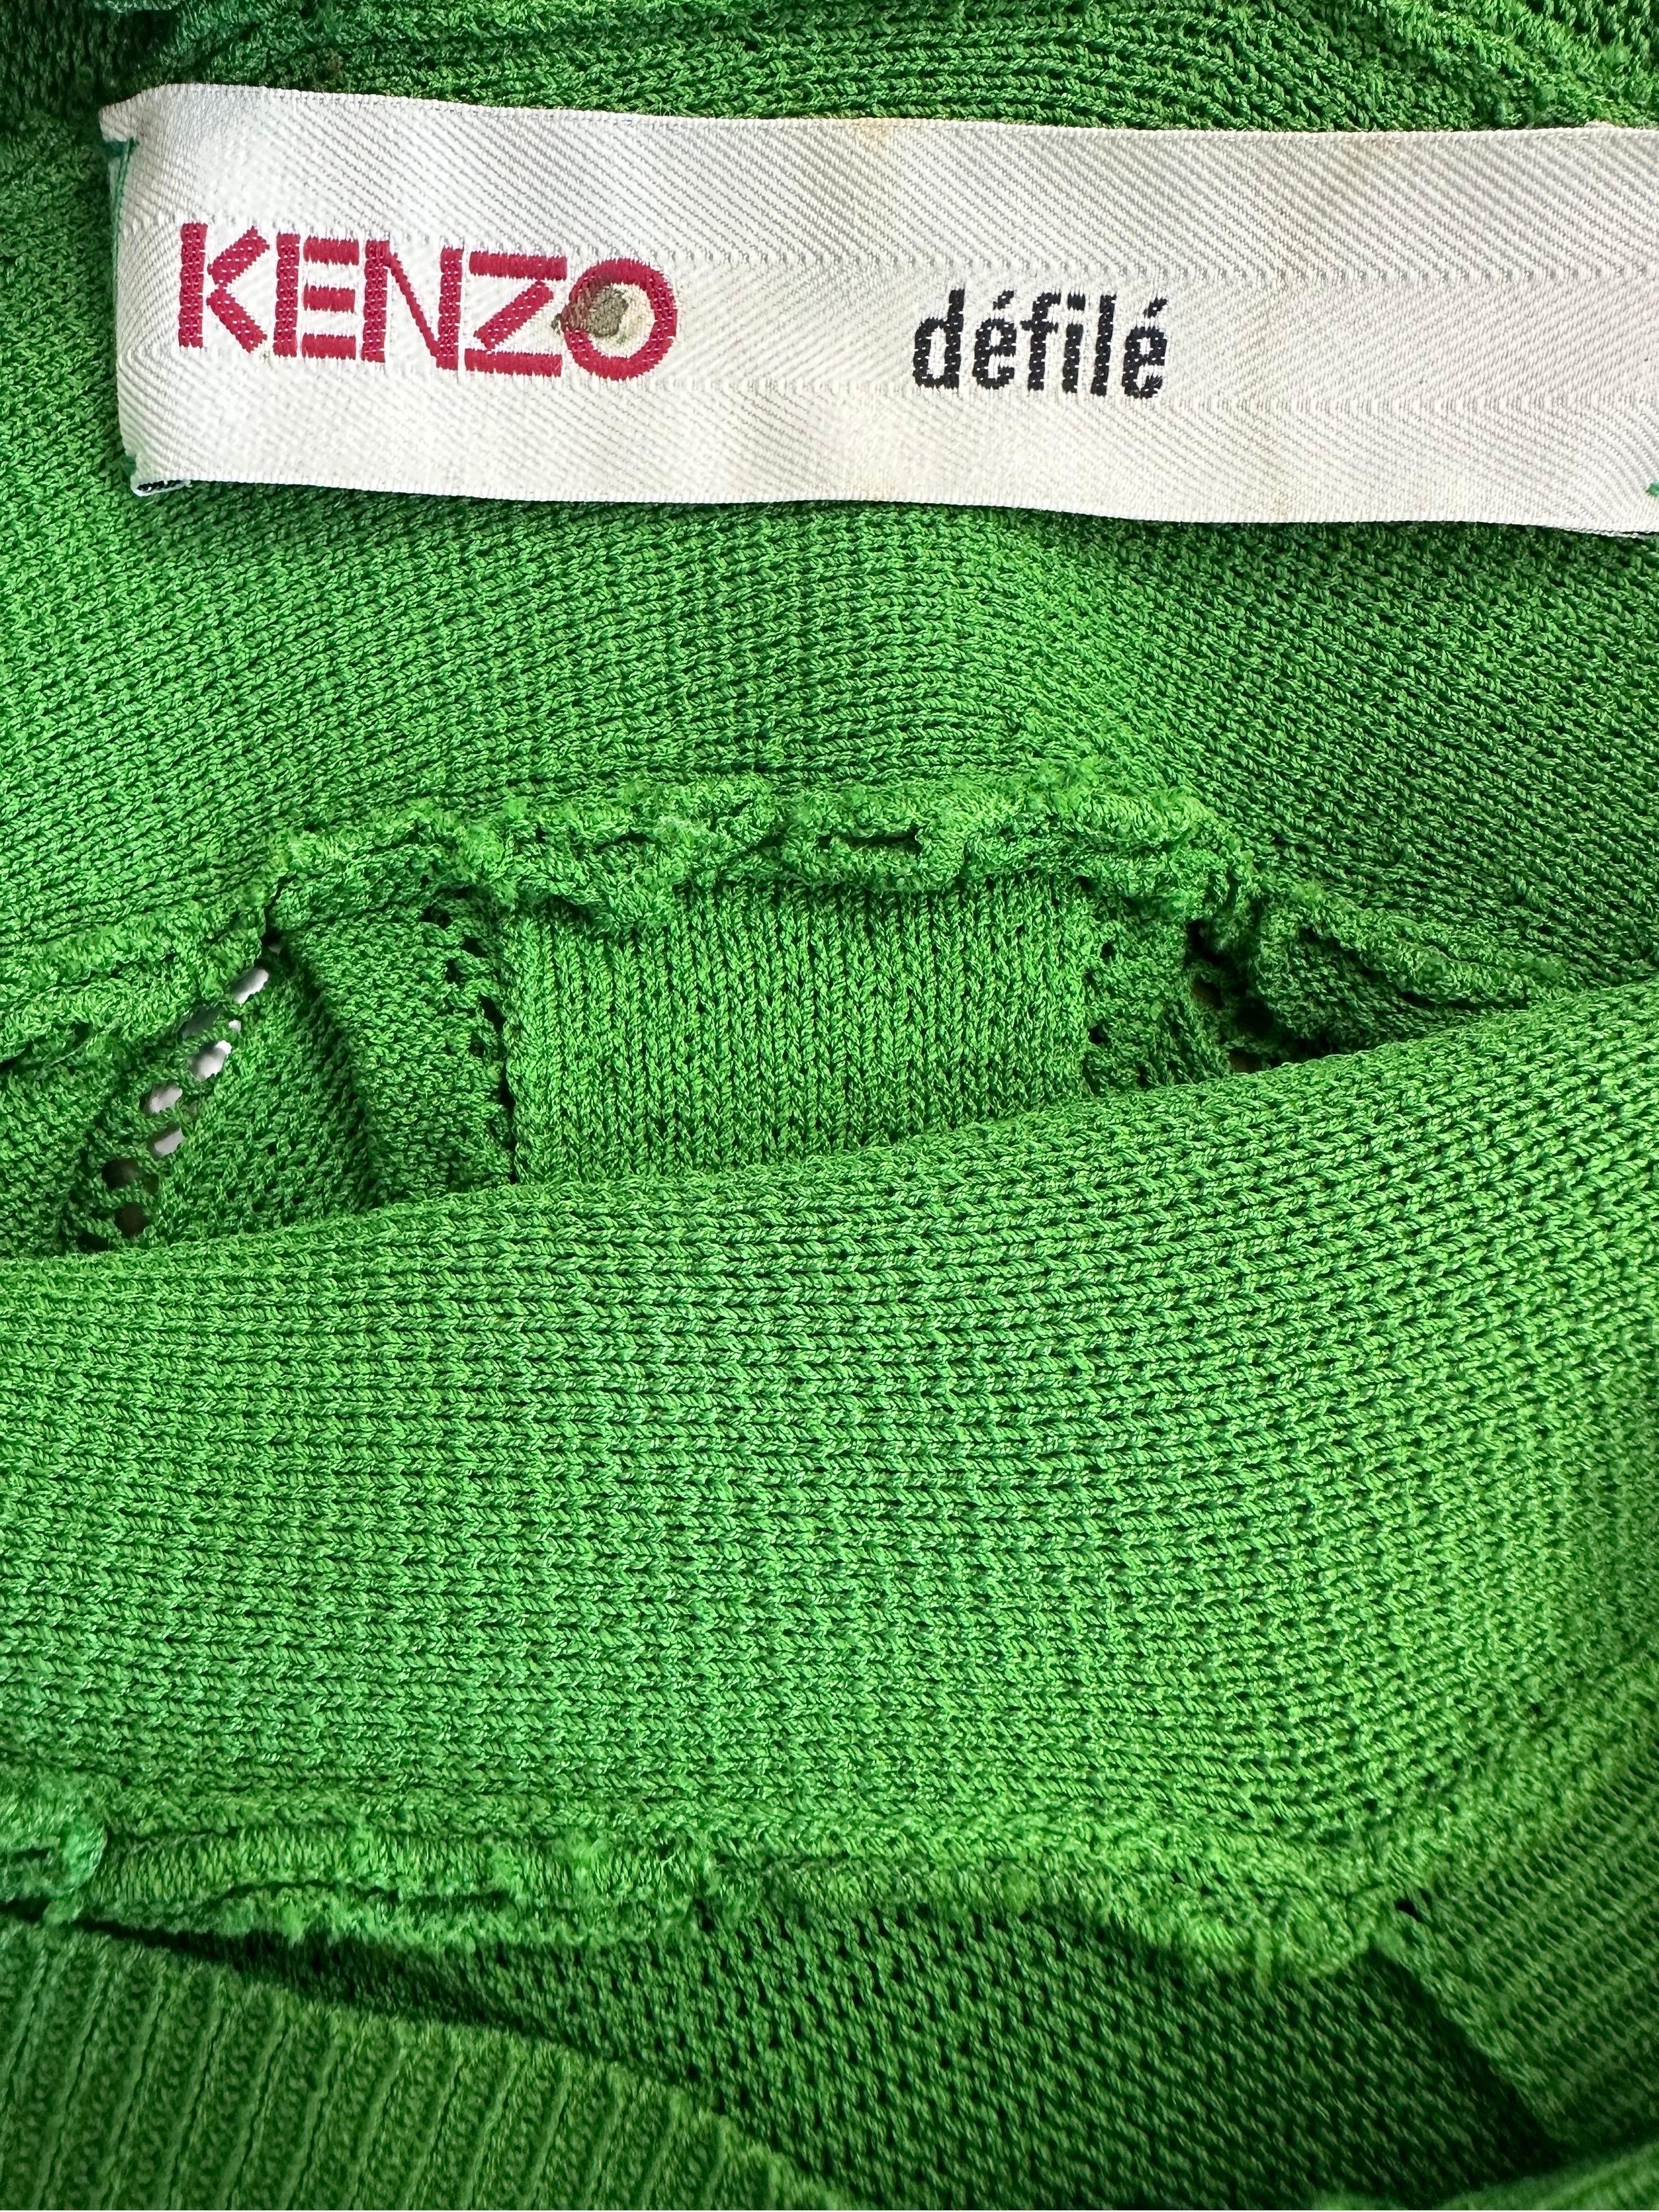 Sequin tunic top Kenzo Défilé For Sale 5